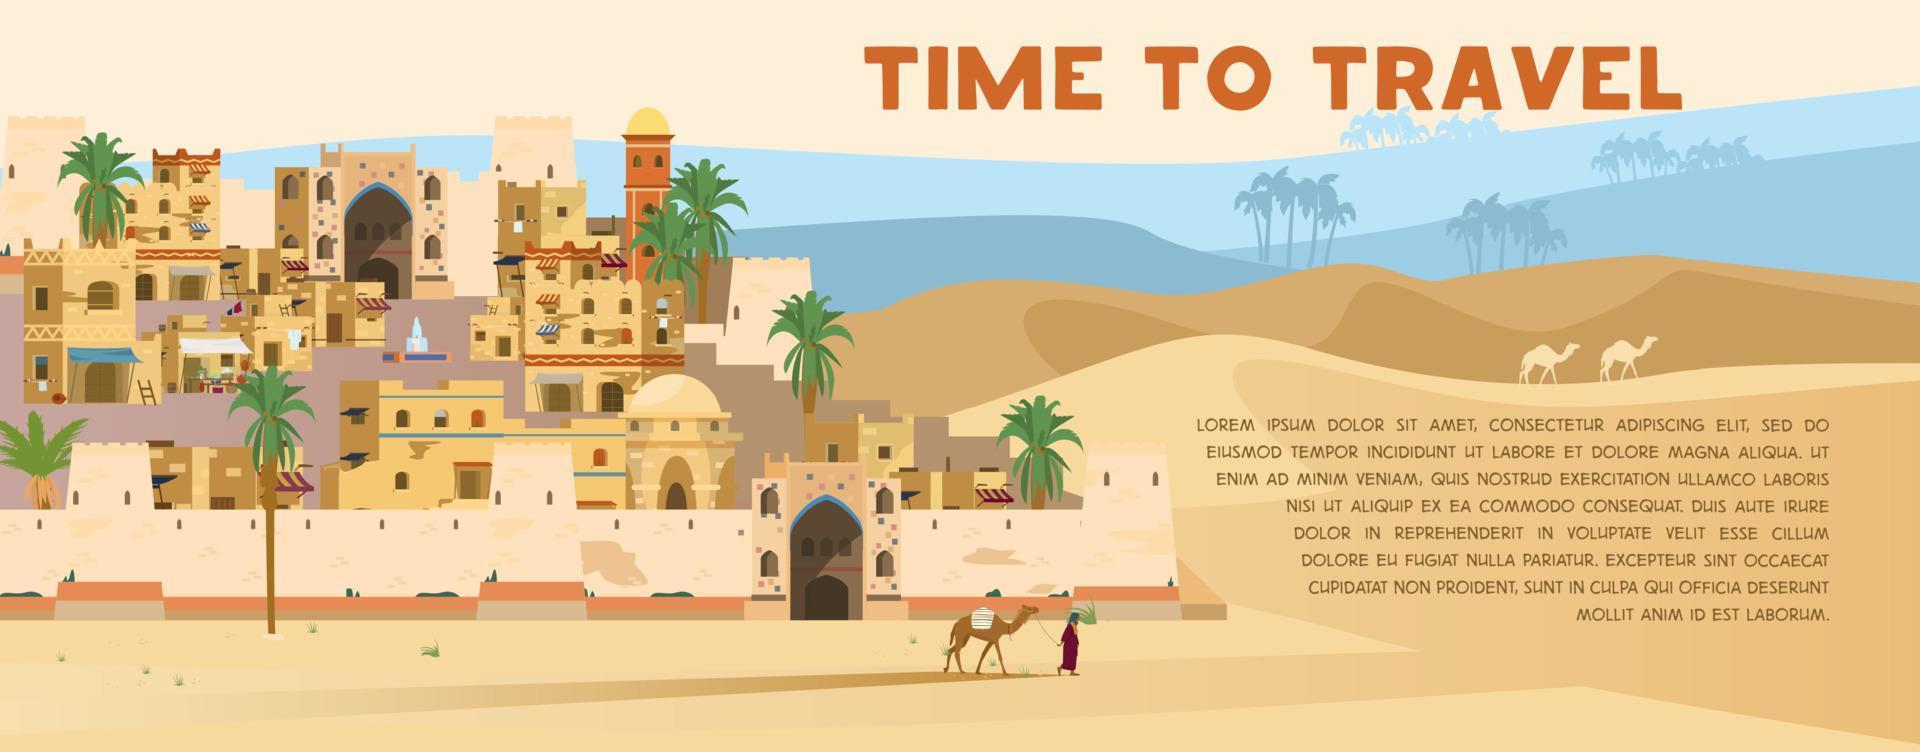 temps de voyager bannière vectorielle avec illustration de l'ancienne ville arabe dans un paysage désertique avec des maisons traditionnelles en briques de boue, des palmiers, des bédouins avec un chameau. conception plate. vecteur